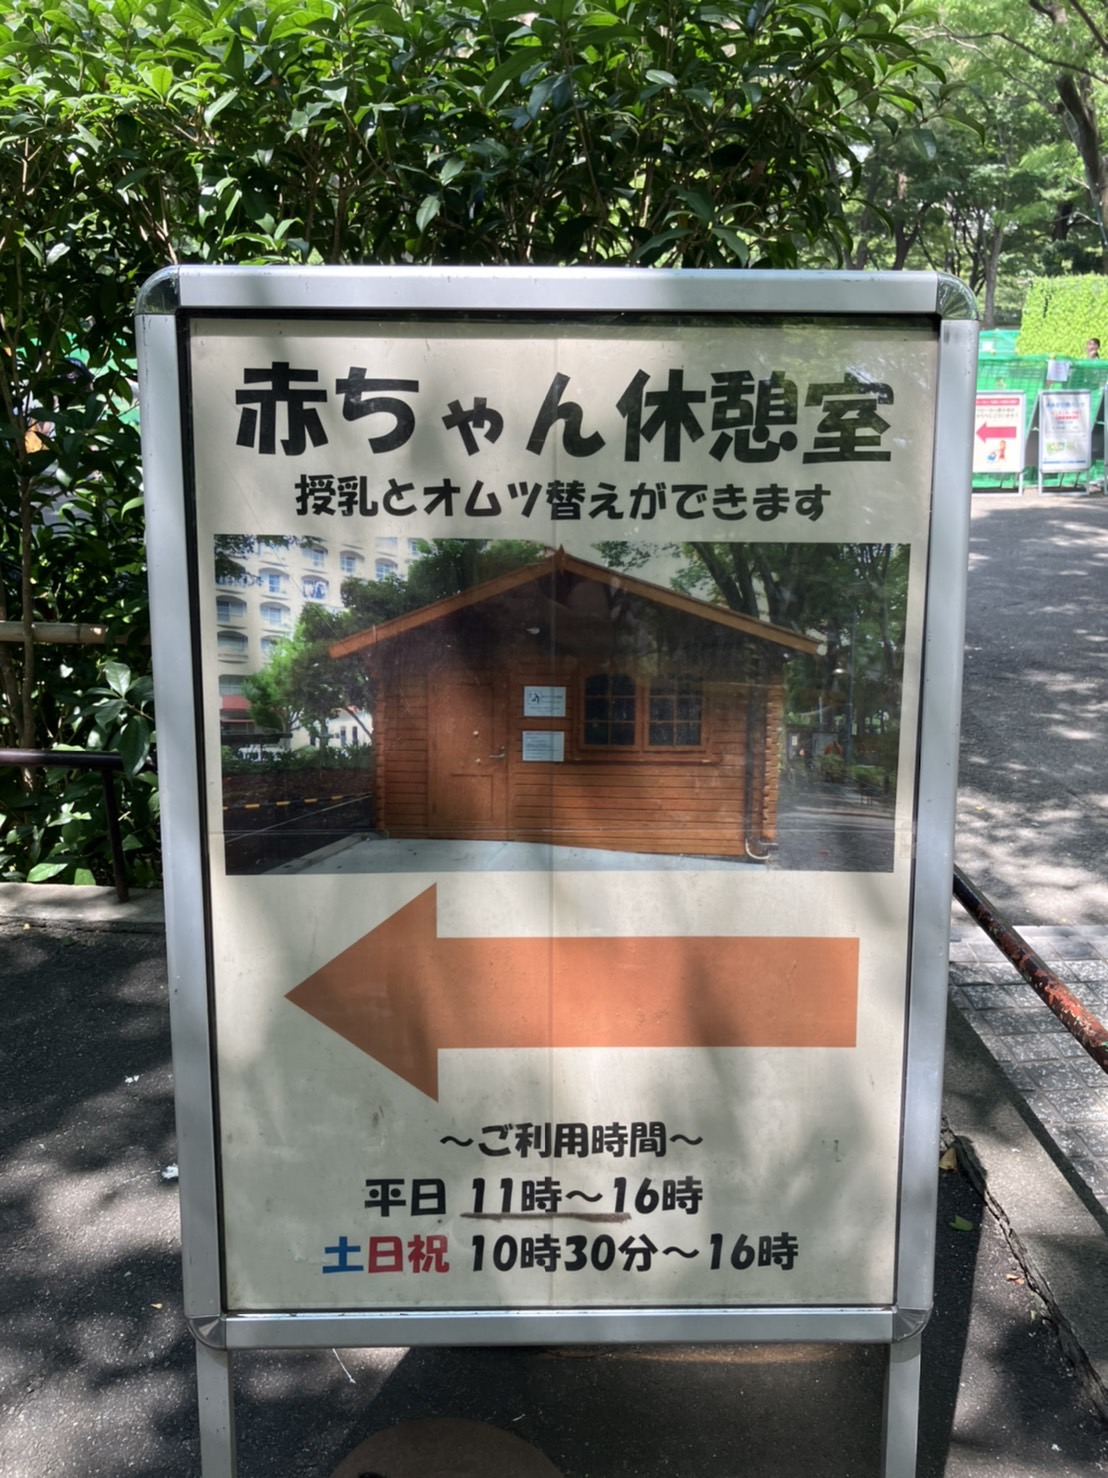 新宿中央公園じゃぶじゃぶ池の赤ちゃん休憩室案内の参考画像